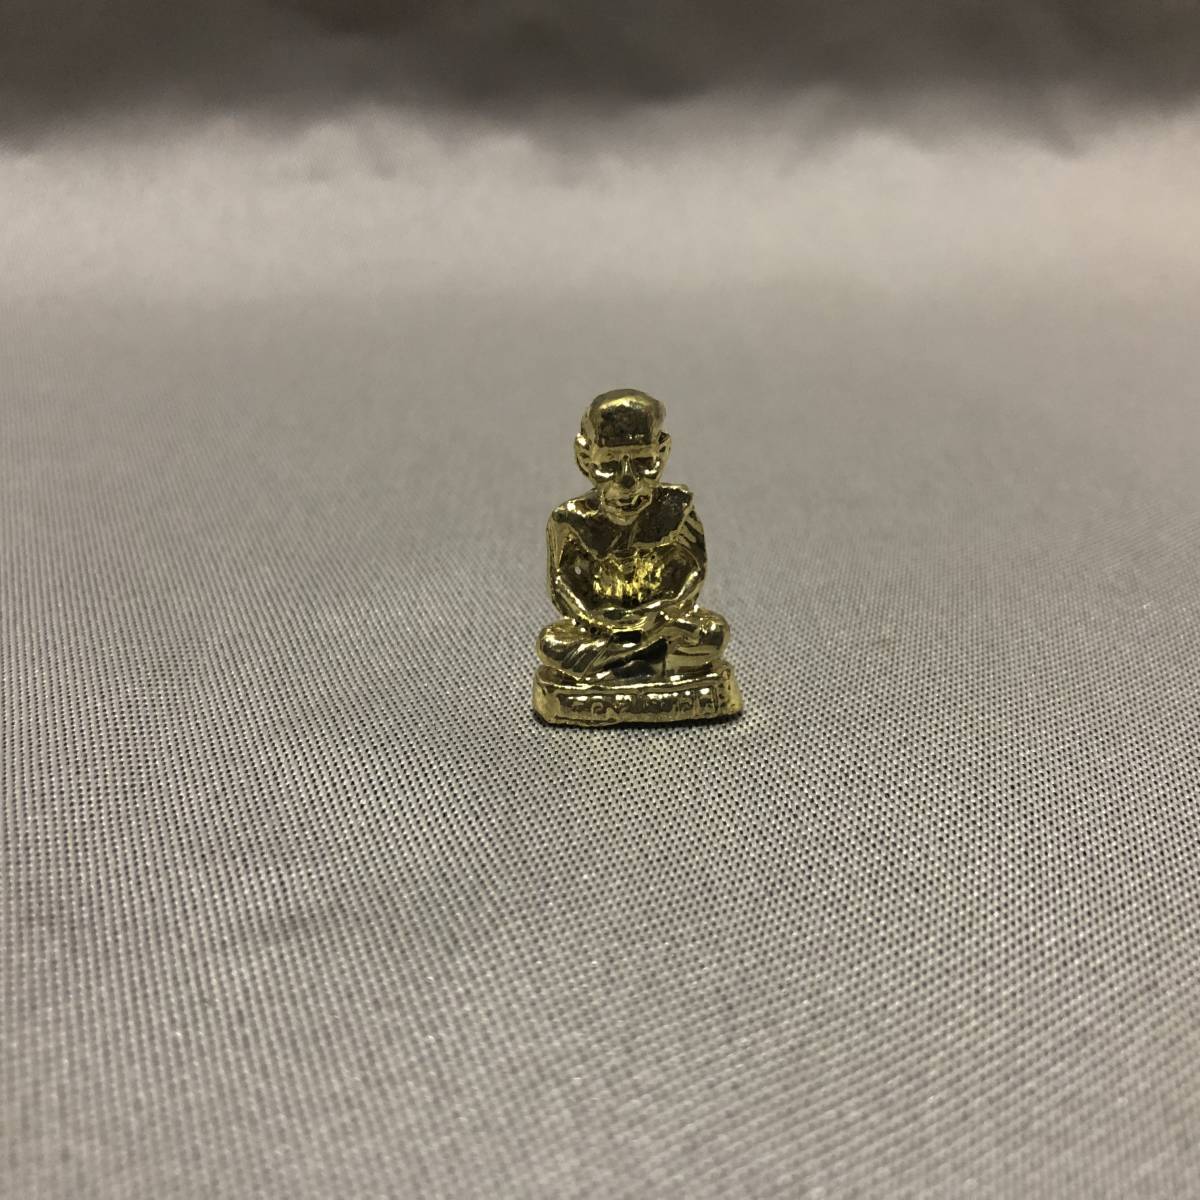 新品・即決・タイで購入した、金属製の小さな小さな高僧’ルアンプートゥアット’像・ケース入り・金_画像3